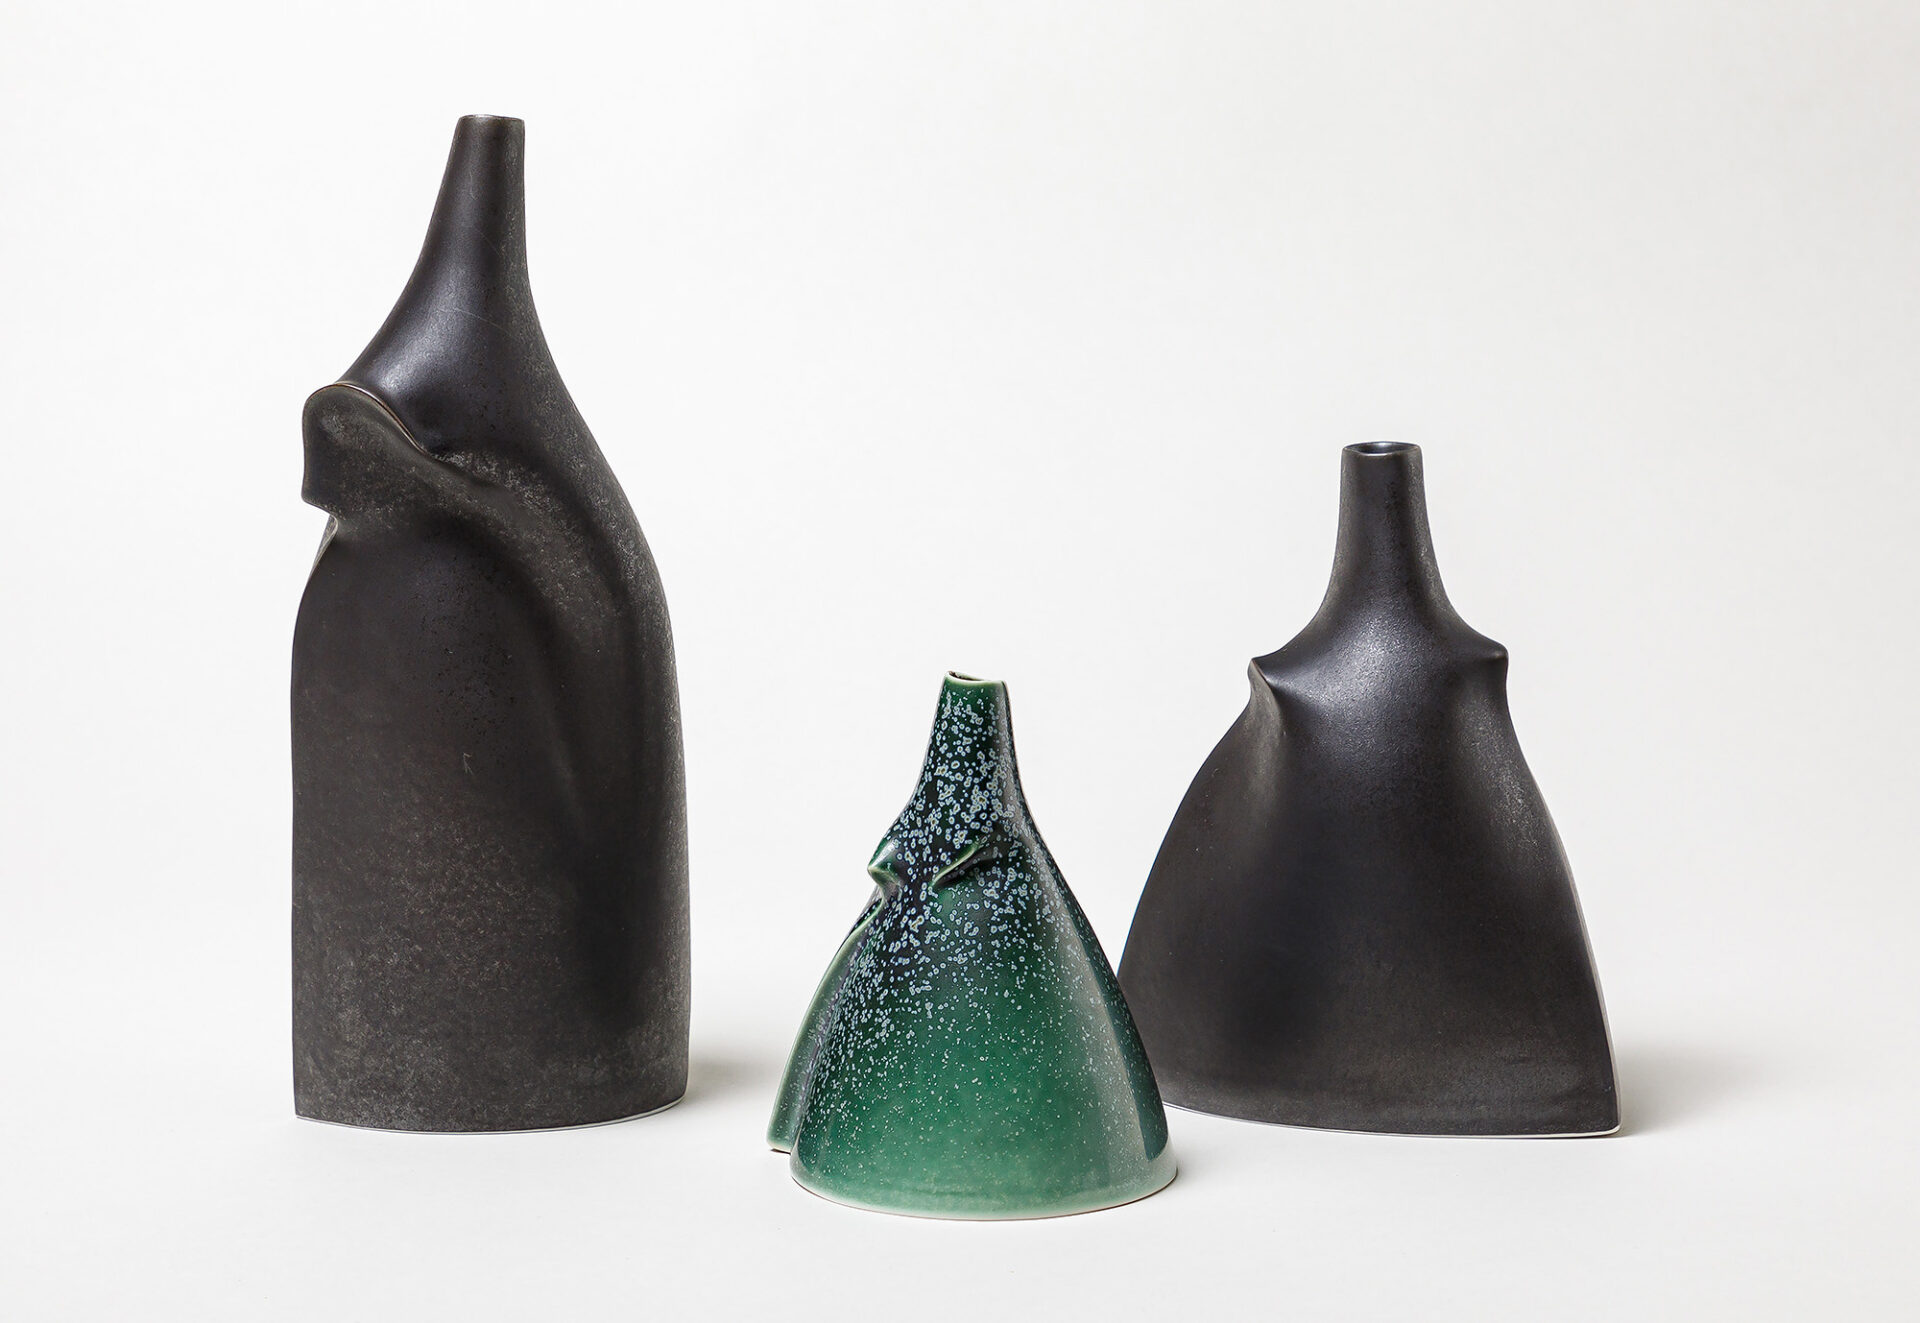 Sara Flynn ceramics 2023 - Sara Flynn exhibition 2023 - Sara Flynn gallery in France